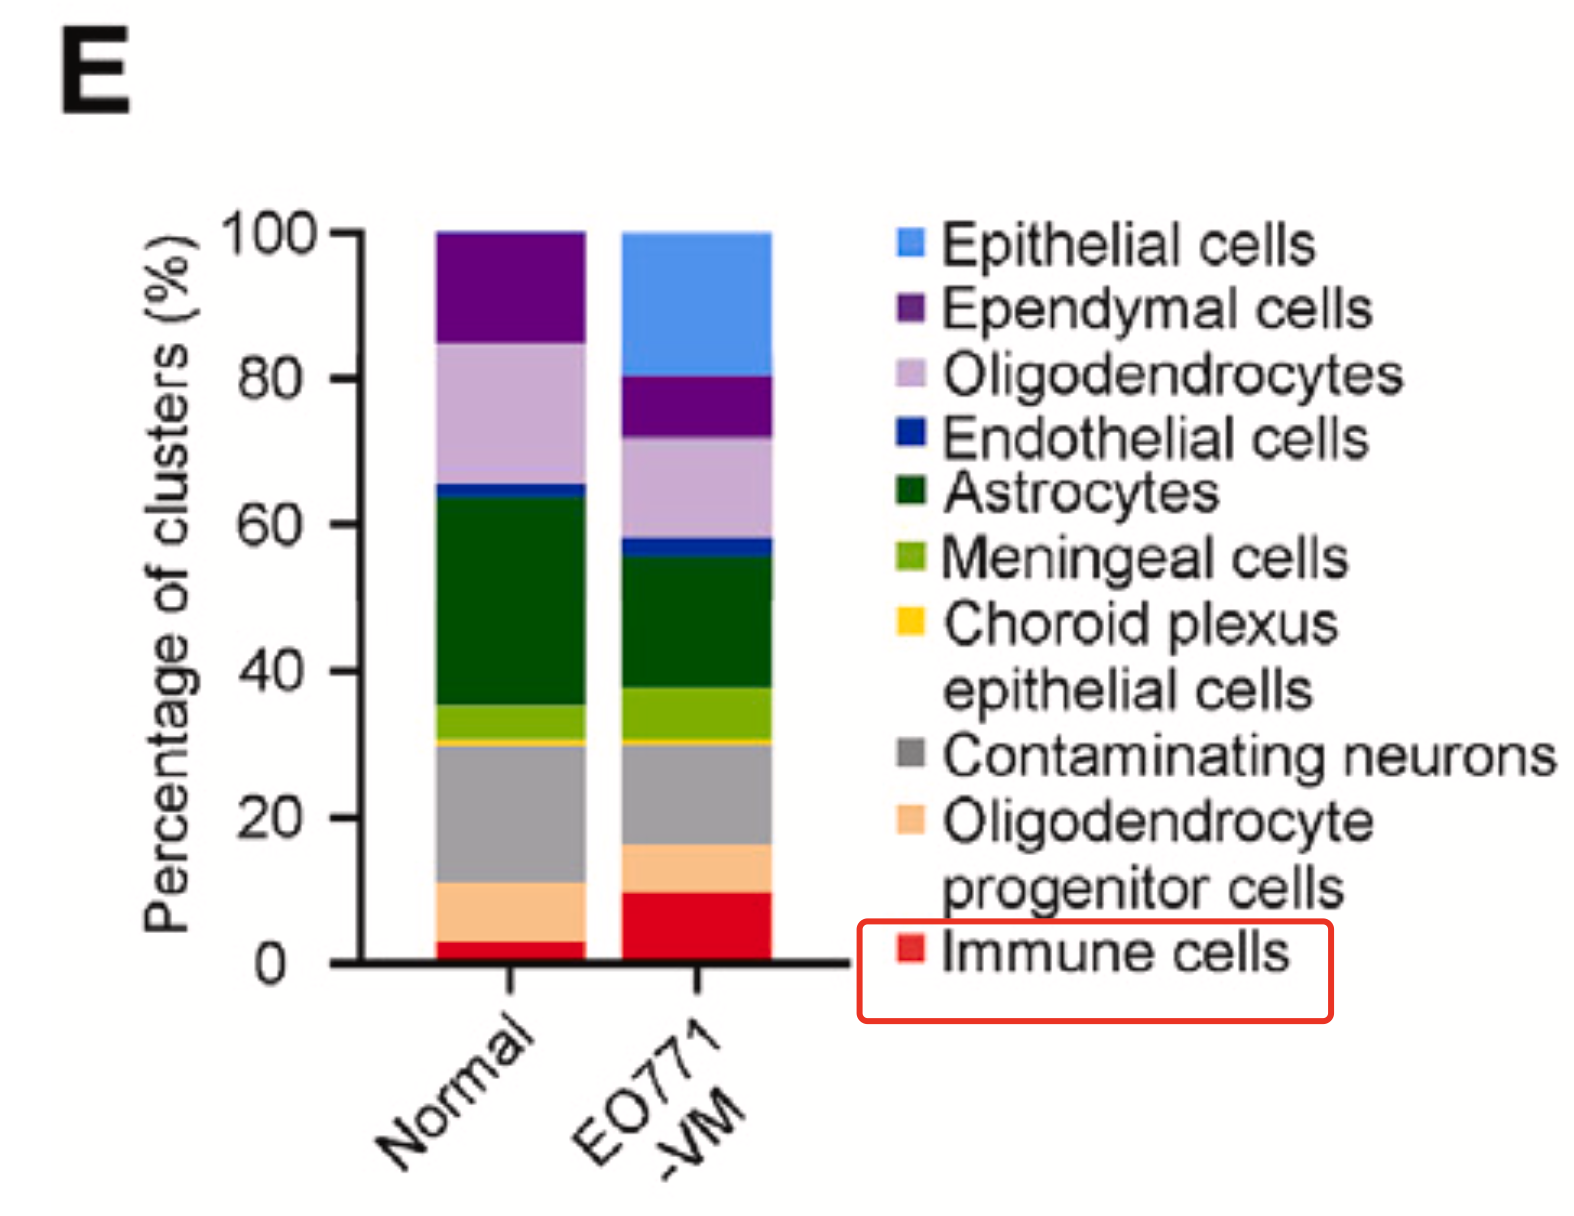 处理组的免疫细胞相对数量是远多于正常组